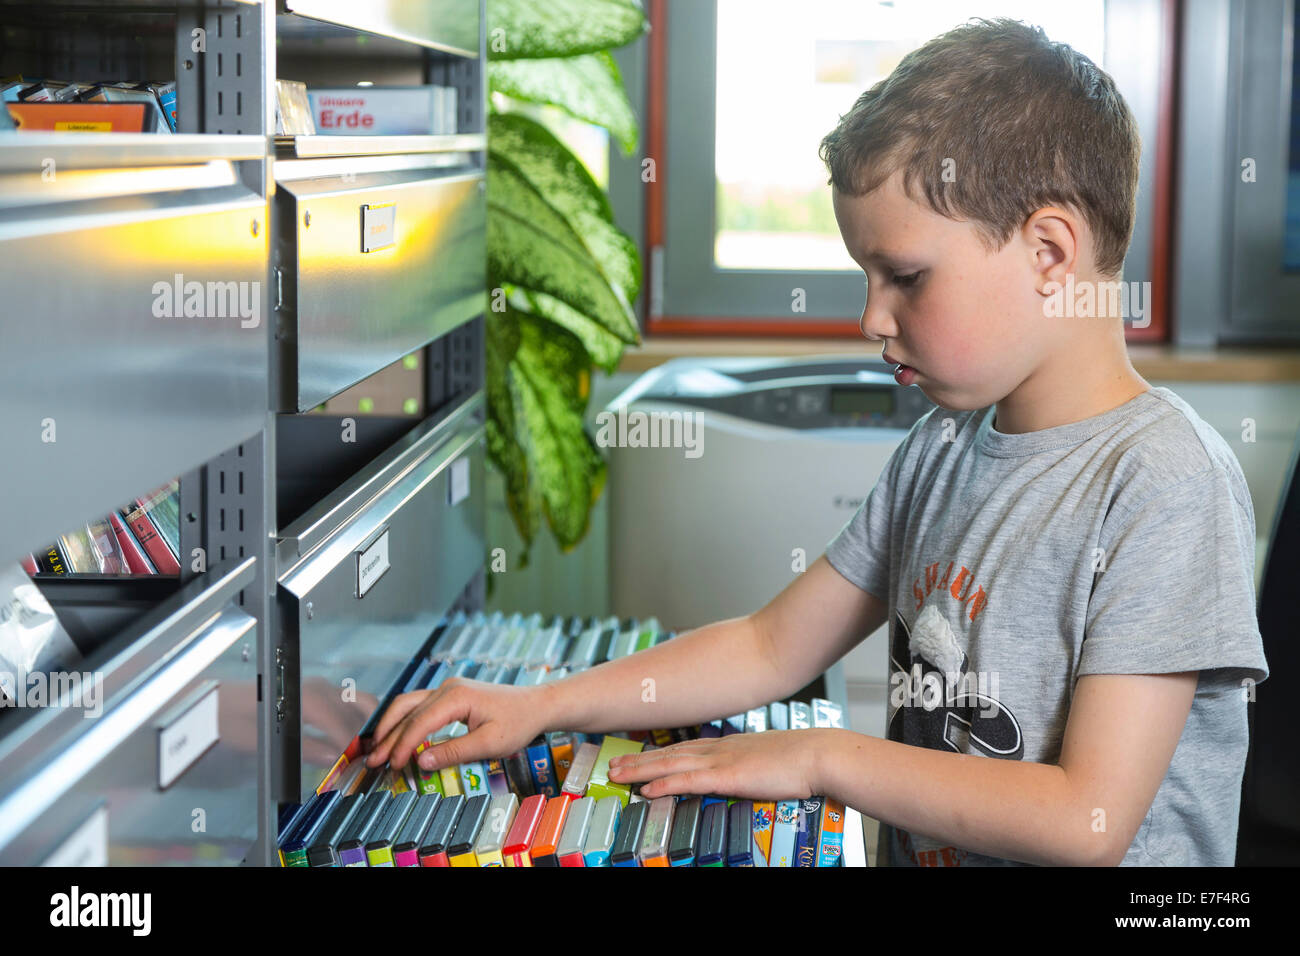 Junge, 7 Jahre, auf der Suche nach Kinderfilme auf DVD Regal, Mediathek der Stadt Bibliothek, Coswig, Sachsen, Deutschland Stockfoto